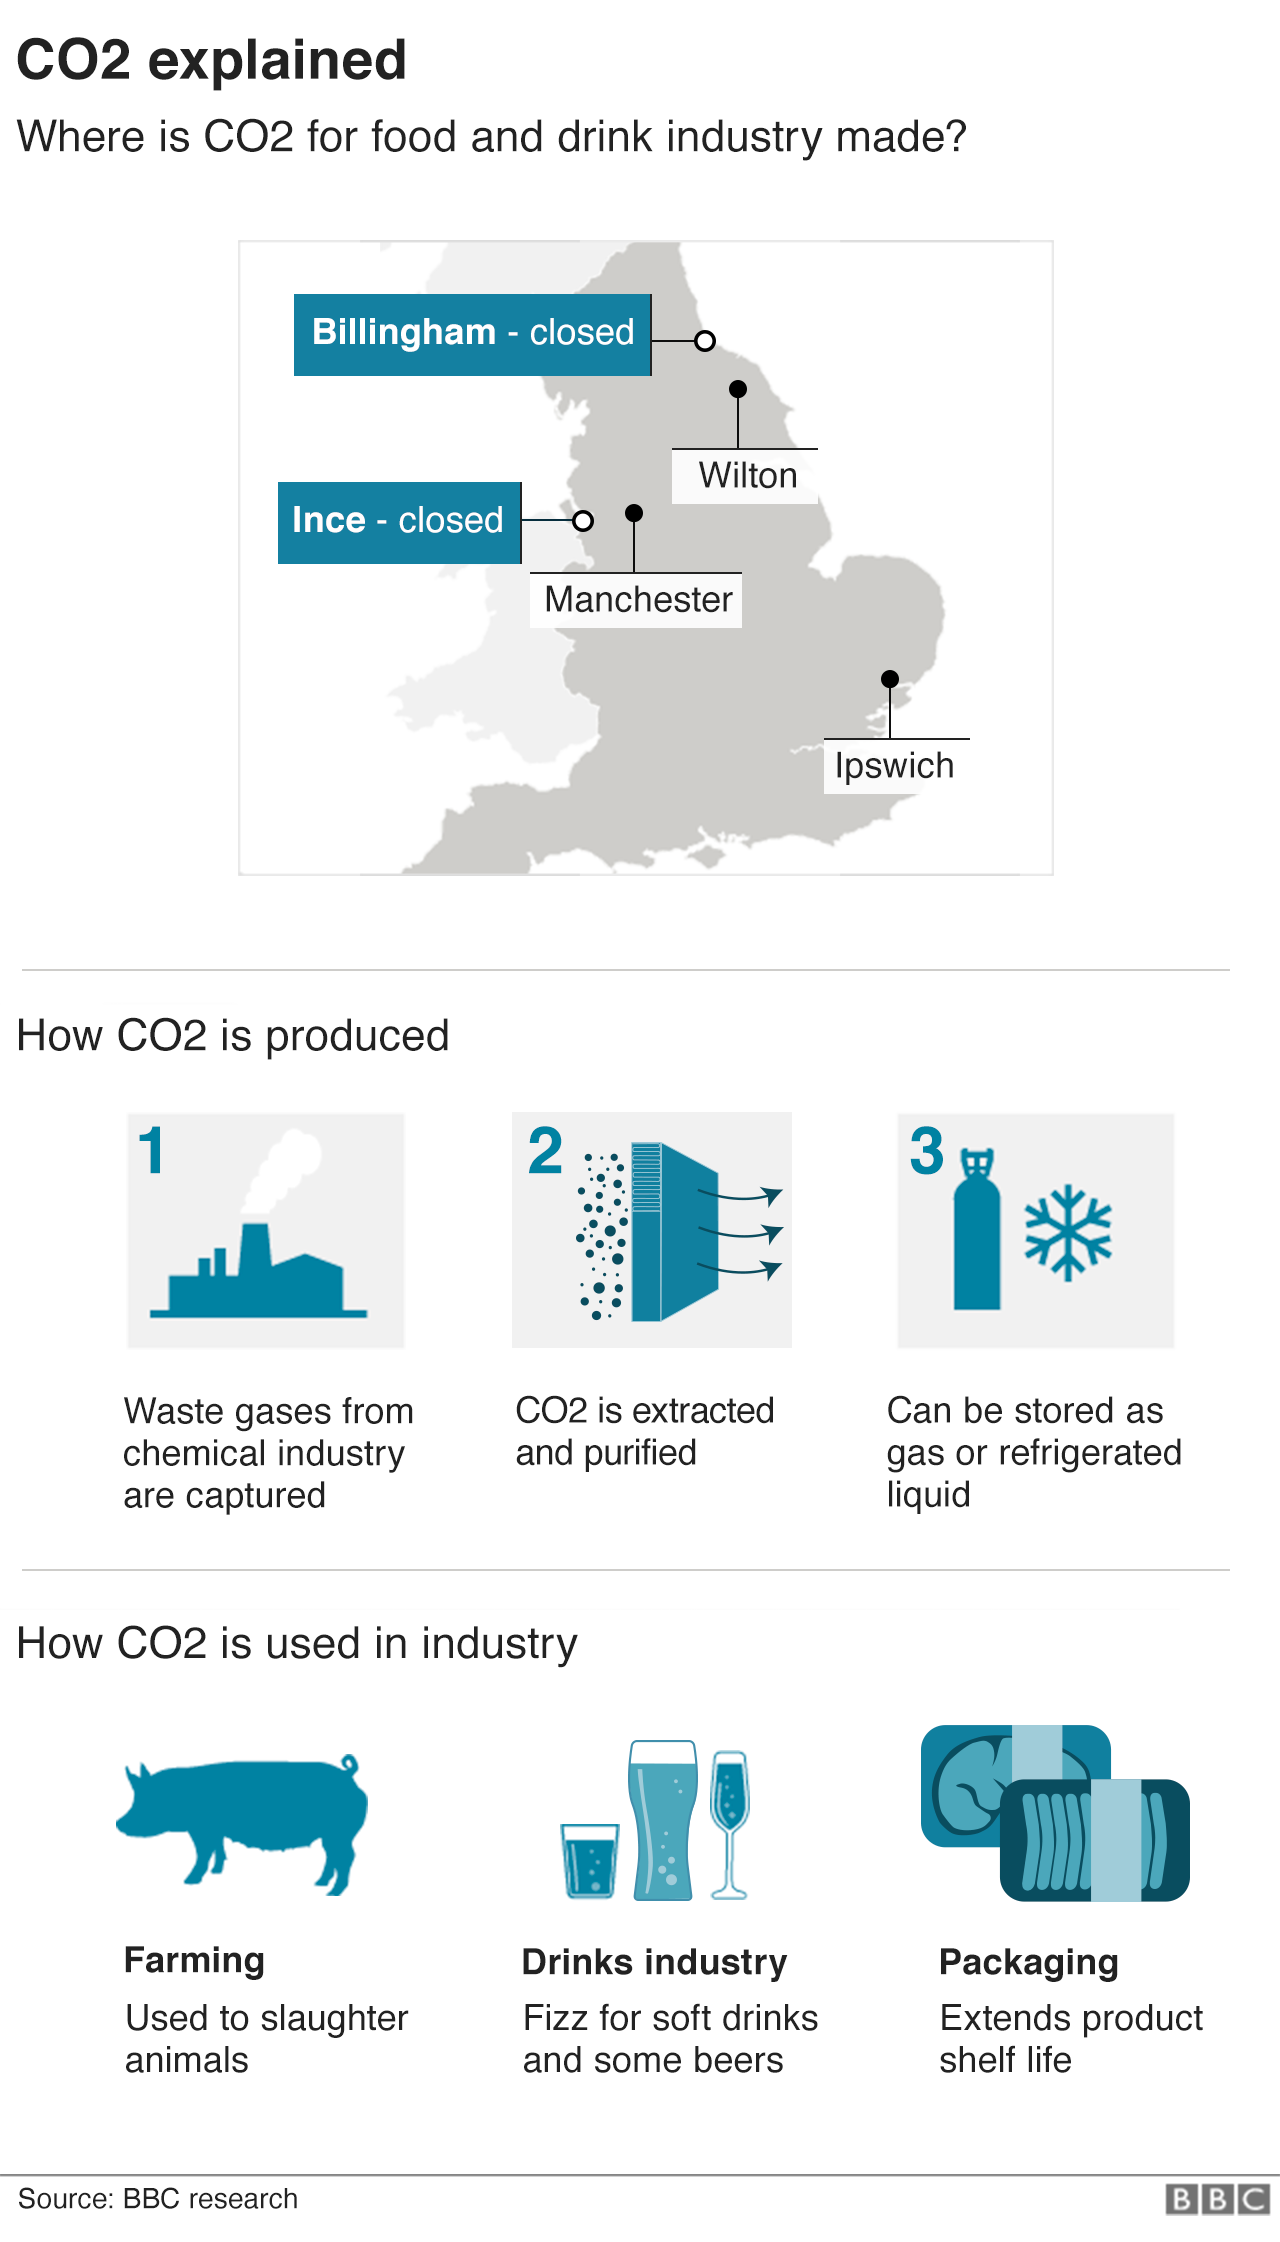 На графике показано, где в Великобритании производится CO2 и как он используется в пищевой промышленности.